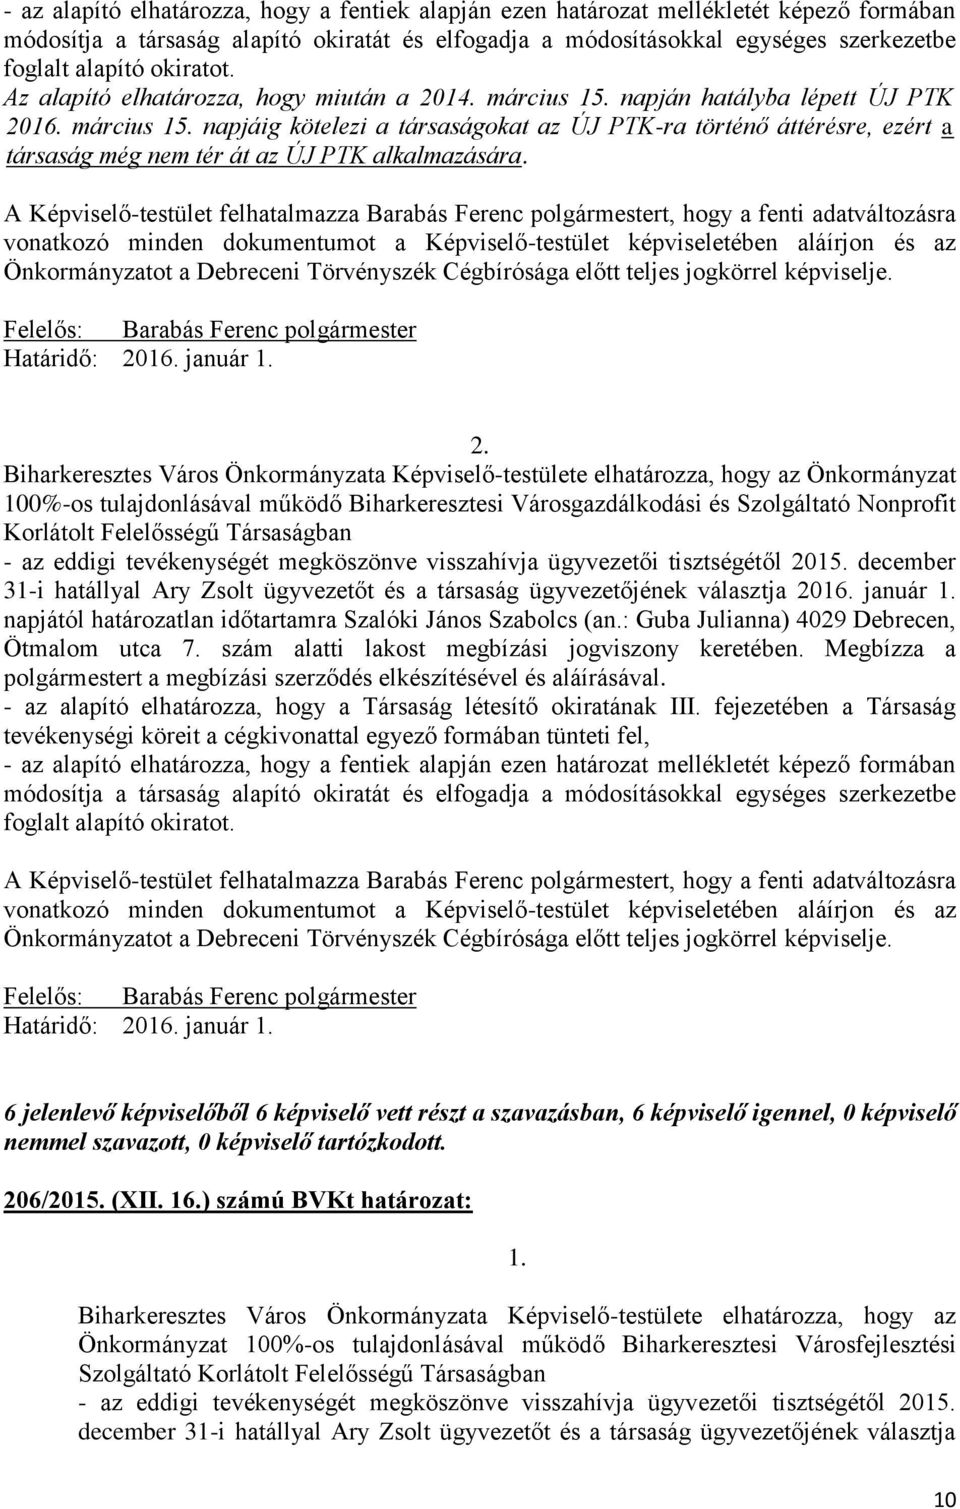 A Képviselő-testület felhatalmazza Barabás Ferenc polgármestert, hogy a fenti adatváltozásra vonatkozó minden dokumentumot a Képviselő-testület képviseletében aláírjon és az Önkormányzatot a